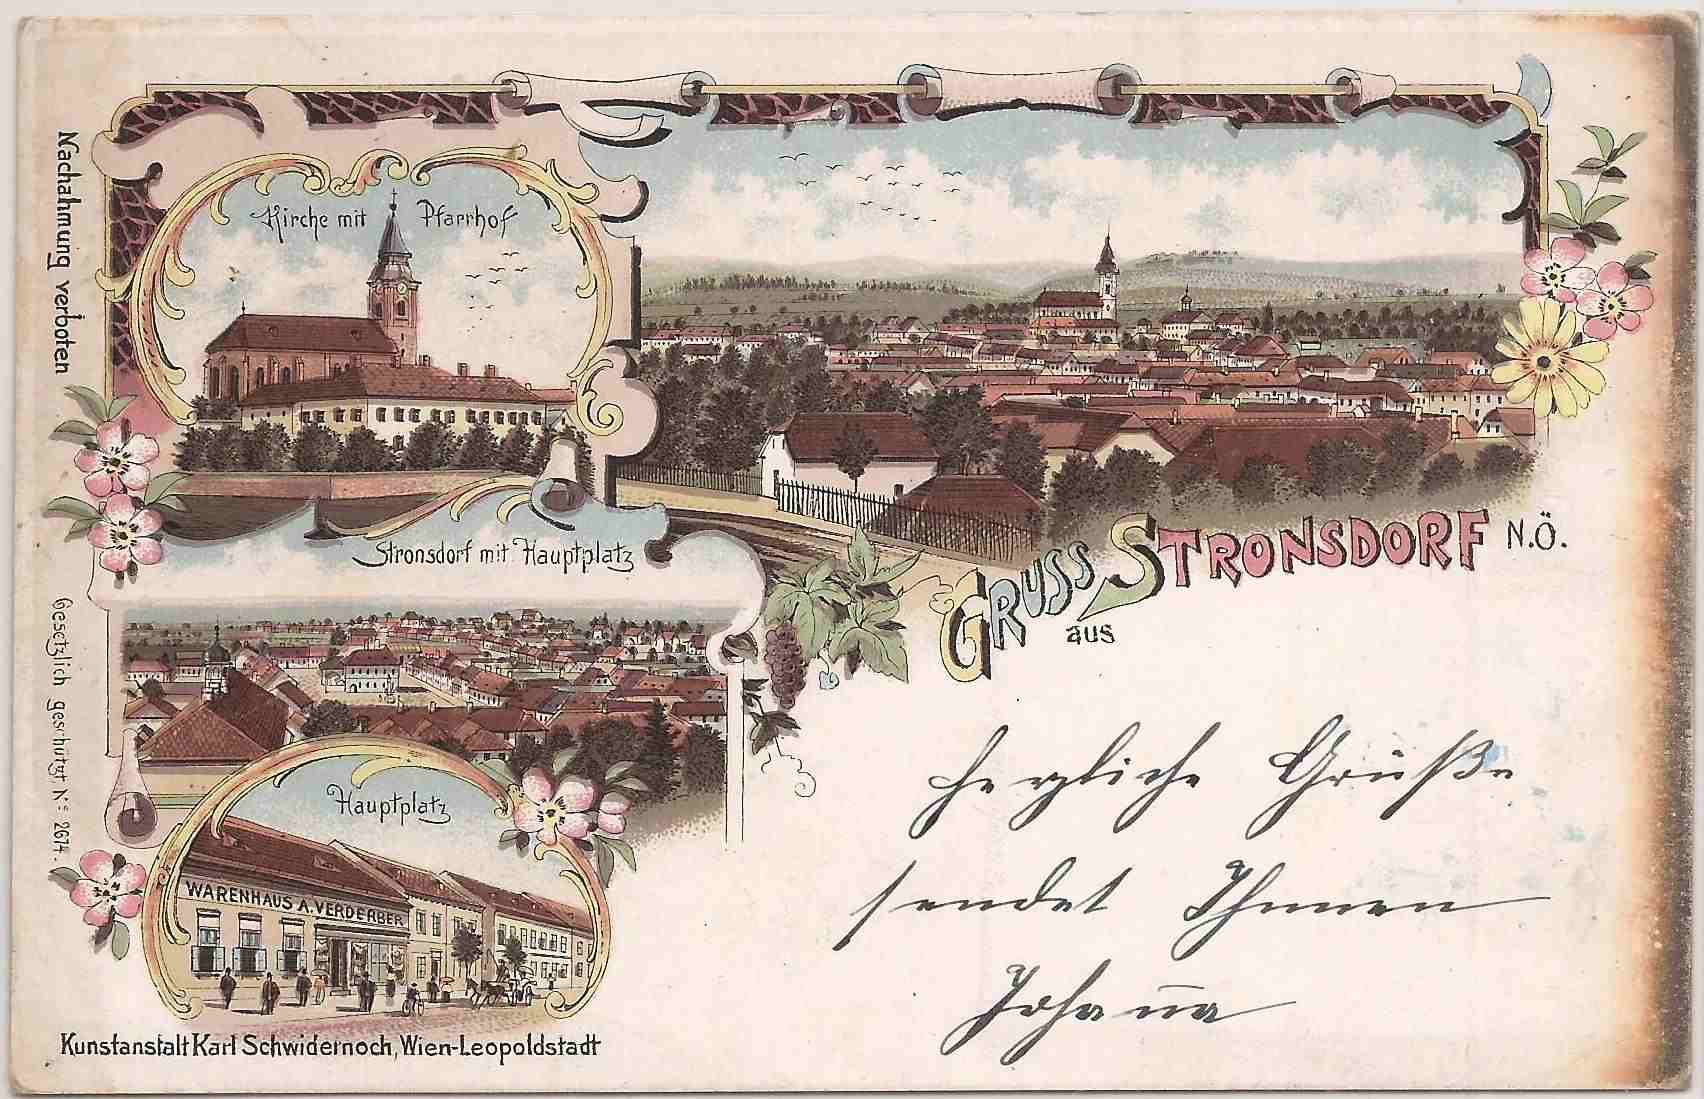 Stronsdorf 1898 Kirche mit Pfarrhof, Ansicht, Hauptplatz, Warenhaus Verderber (Schwidernoch)